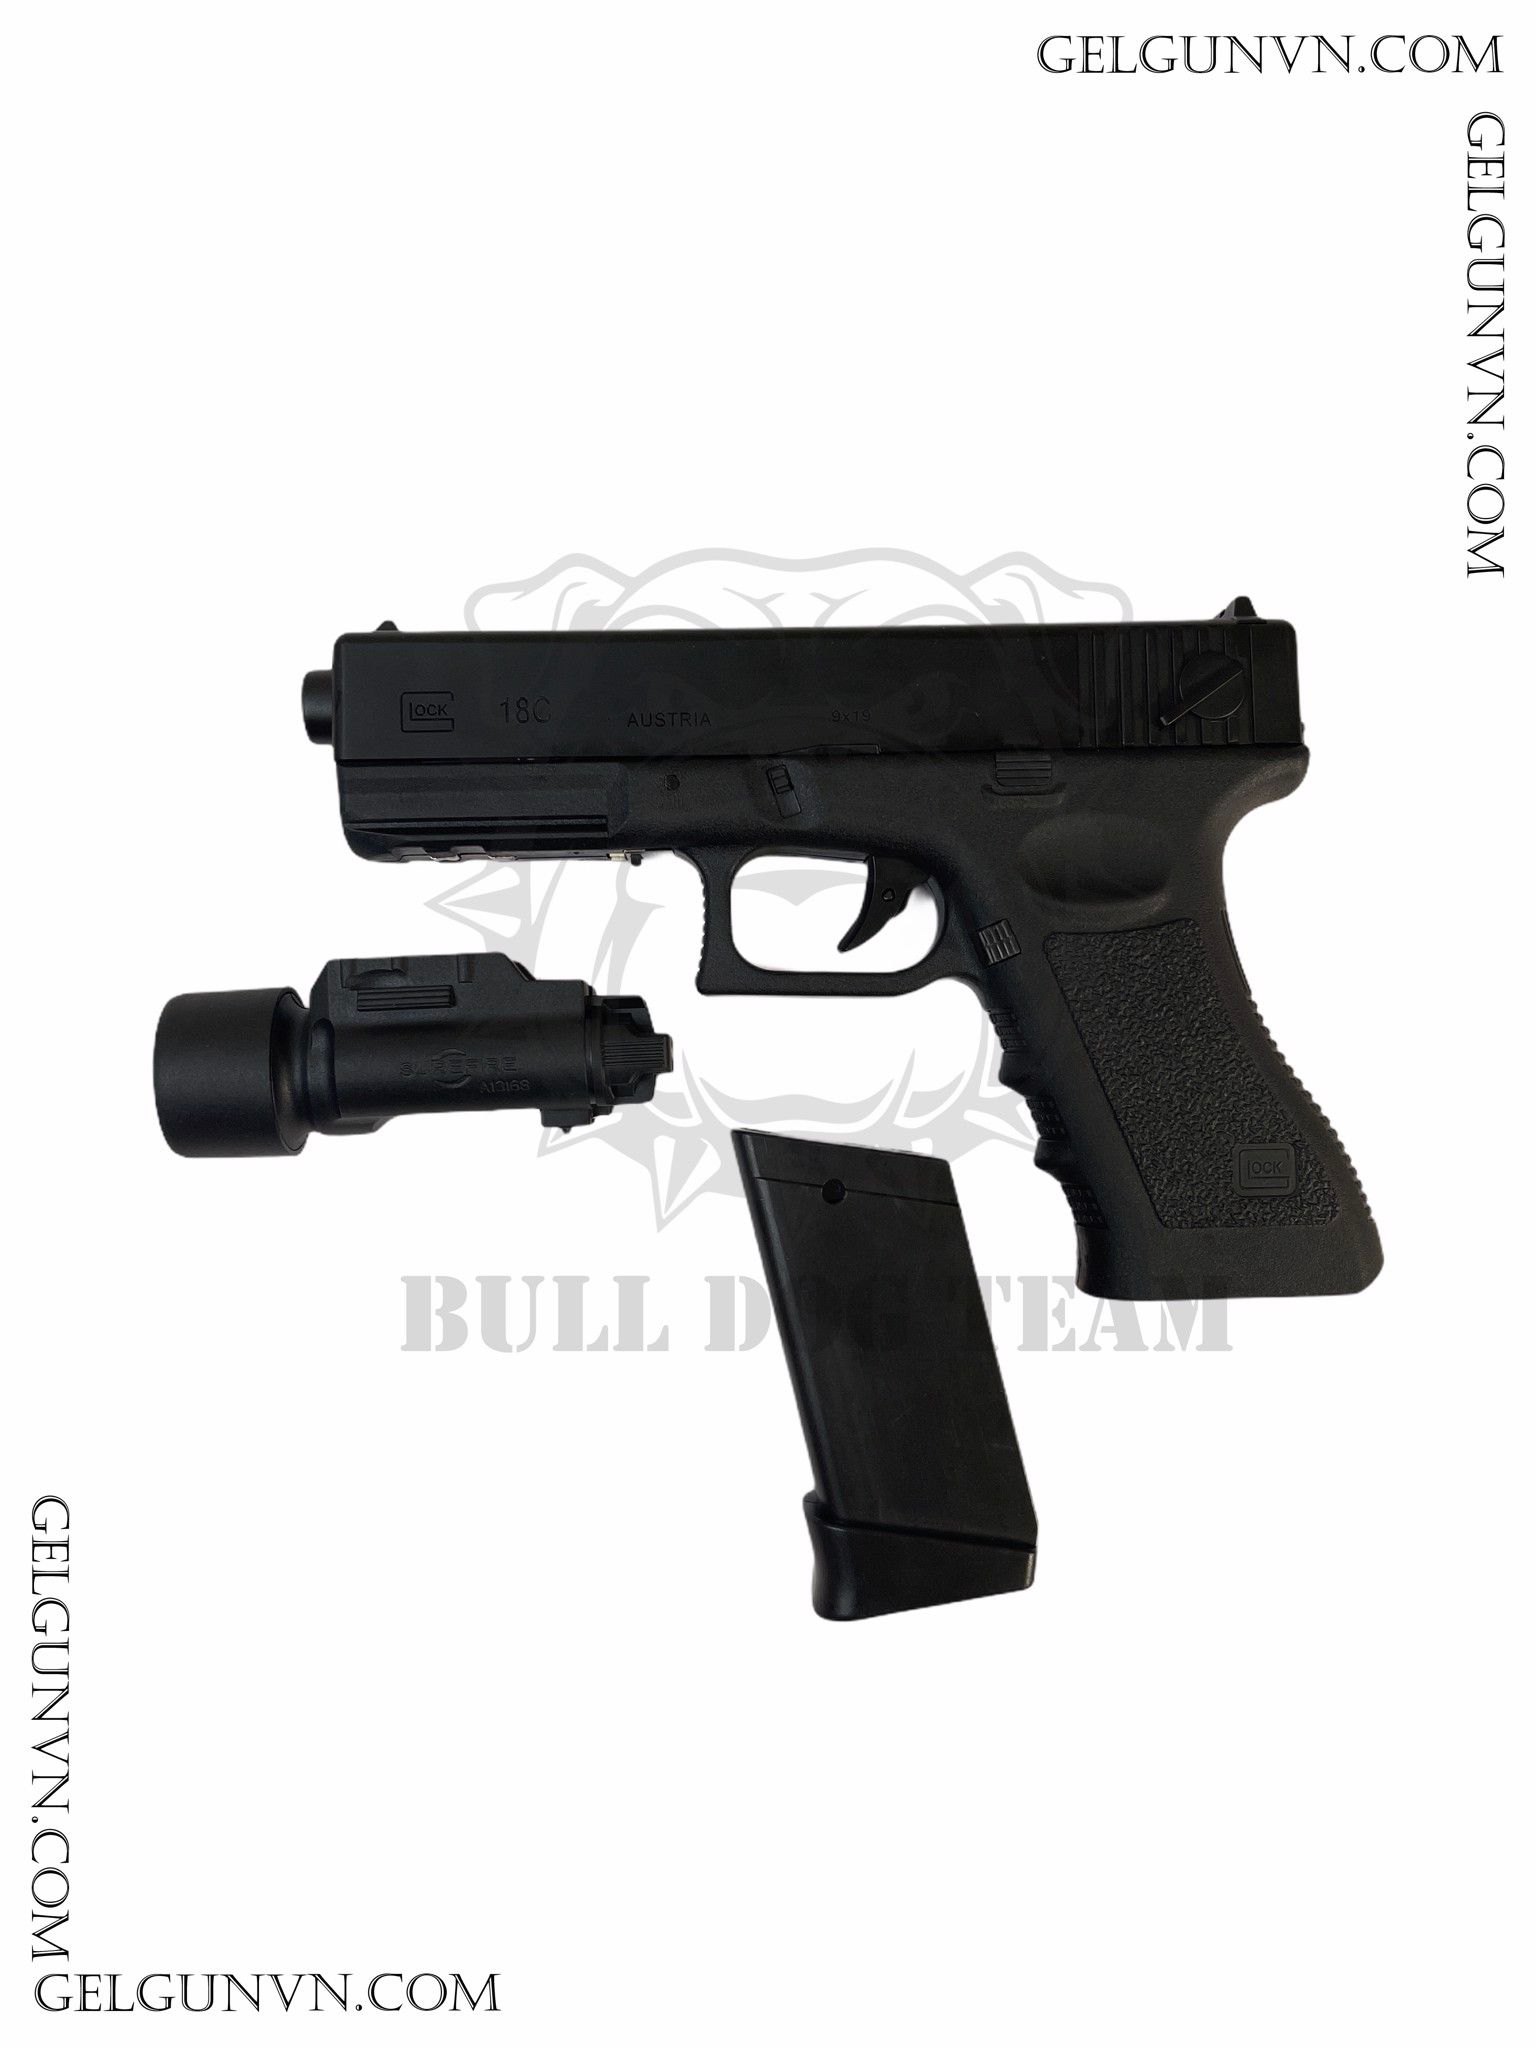  Súng Đạn Thạch Glock 18S - Cải Tiến, Đẹp Hơn , Khỏe hơn - Hàng Có Sẵn 